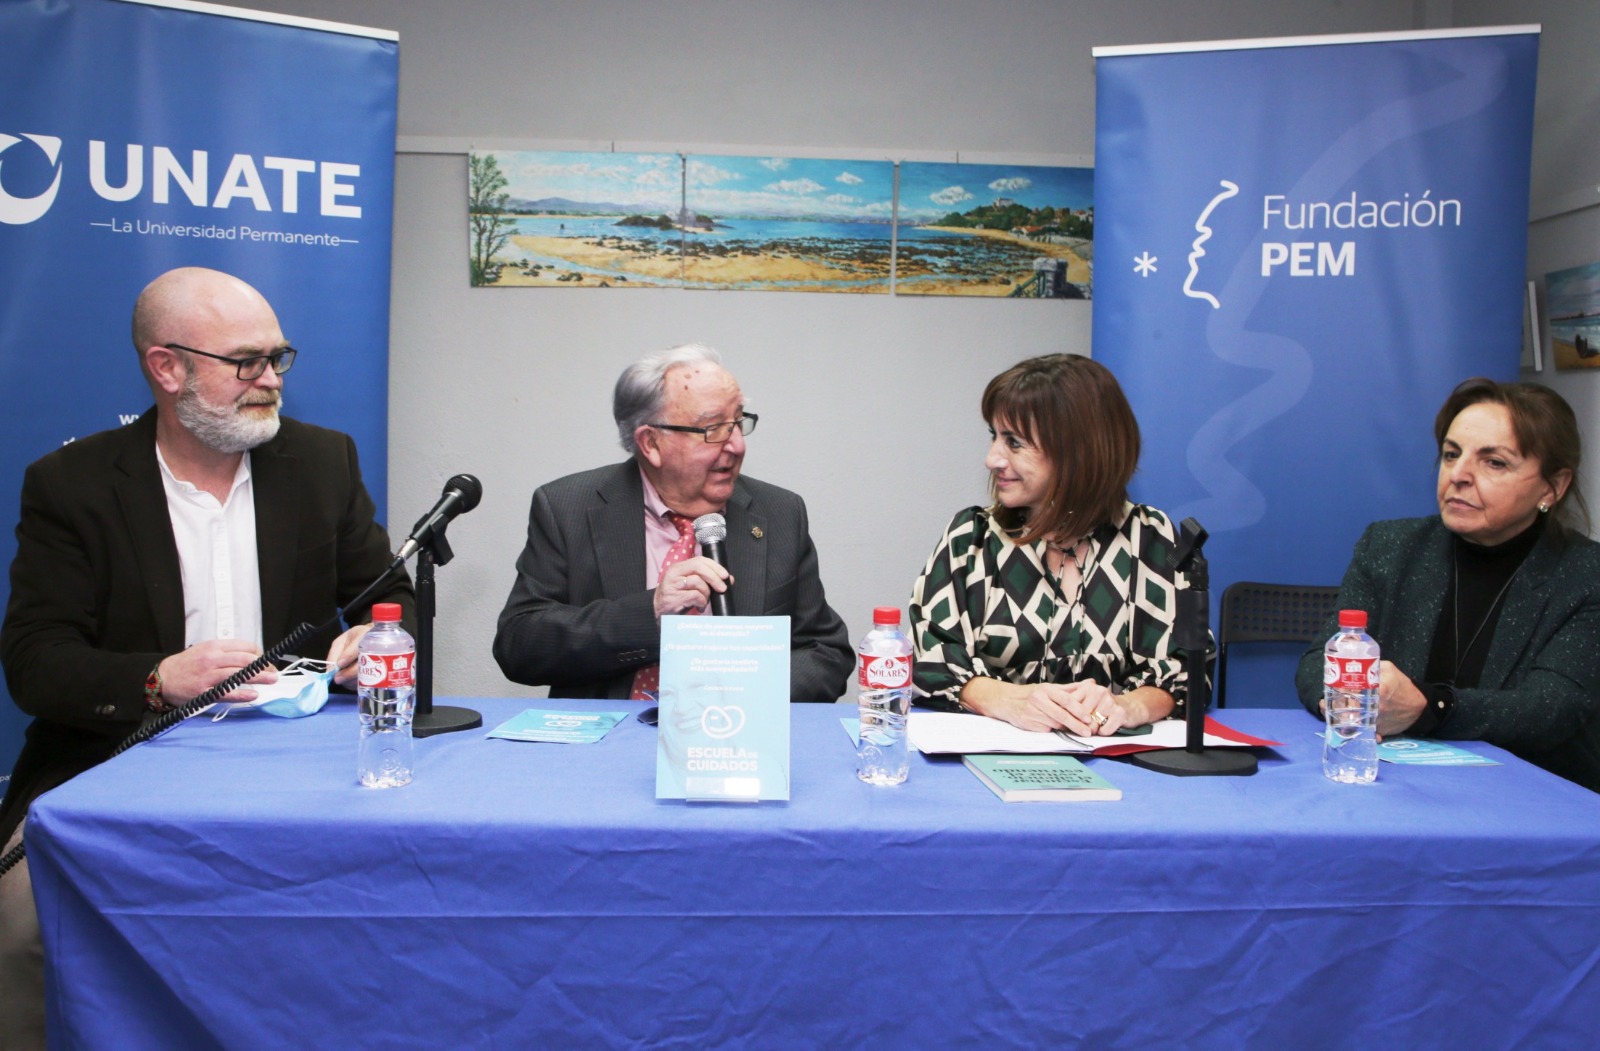 Fundación PEM y UNATE ponen en marcha una Escuela de Cuidados para familiares y trabajadoras que cuidan de personas mayores en Cantabria